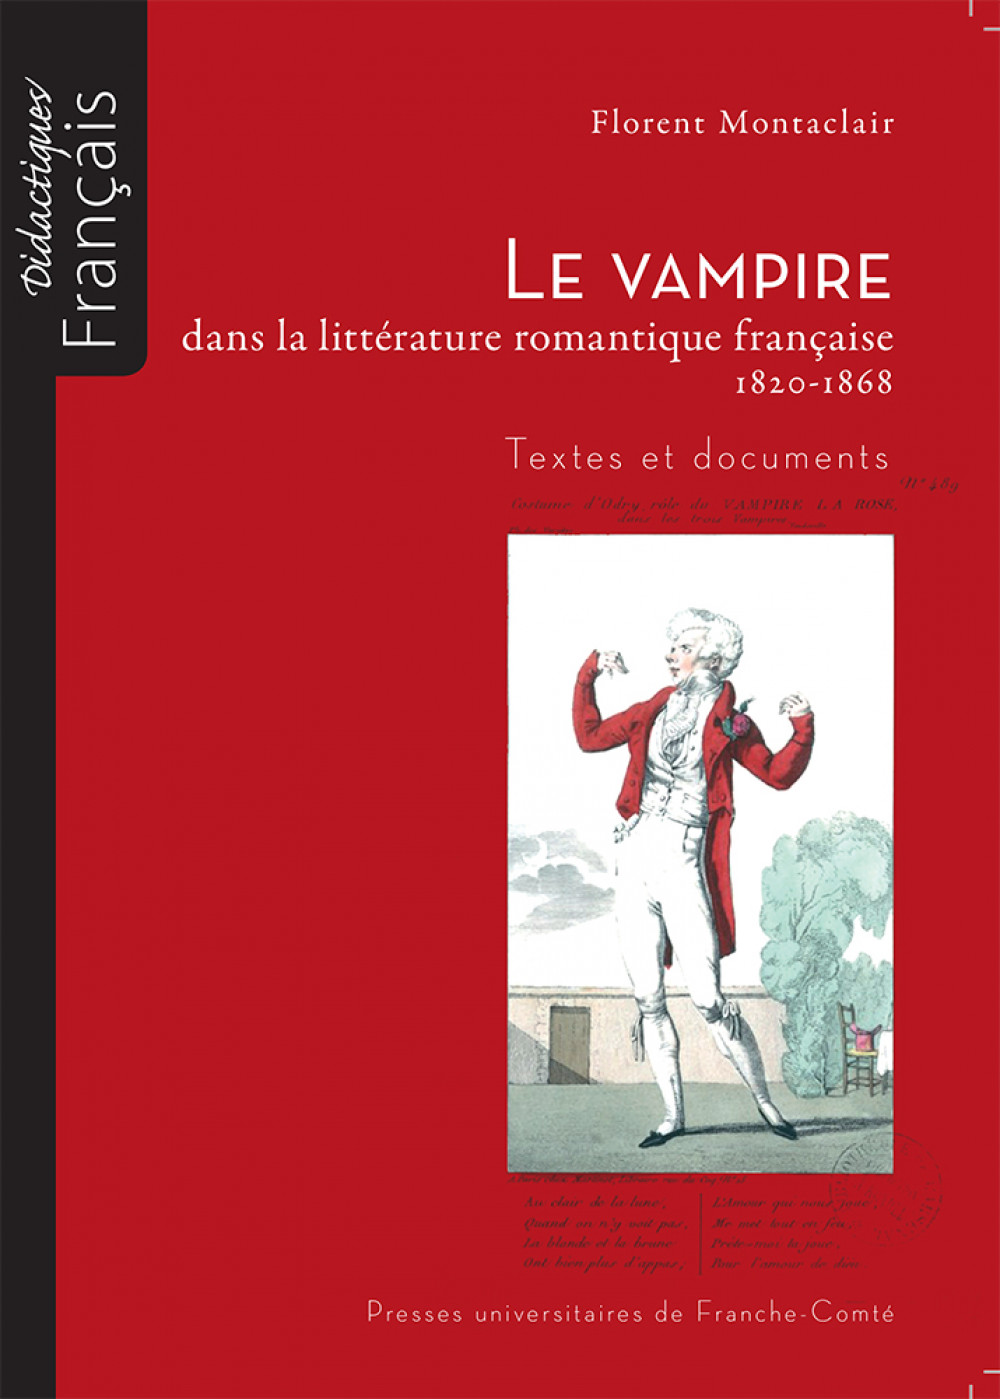 Le vampire dans la littérature romantique française 1820-1868